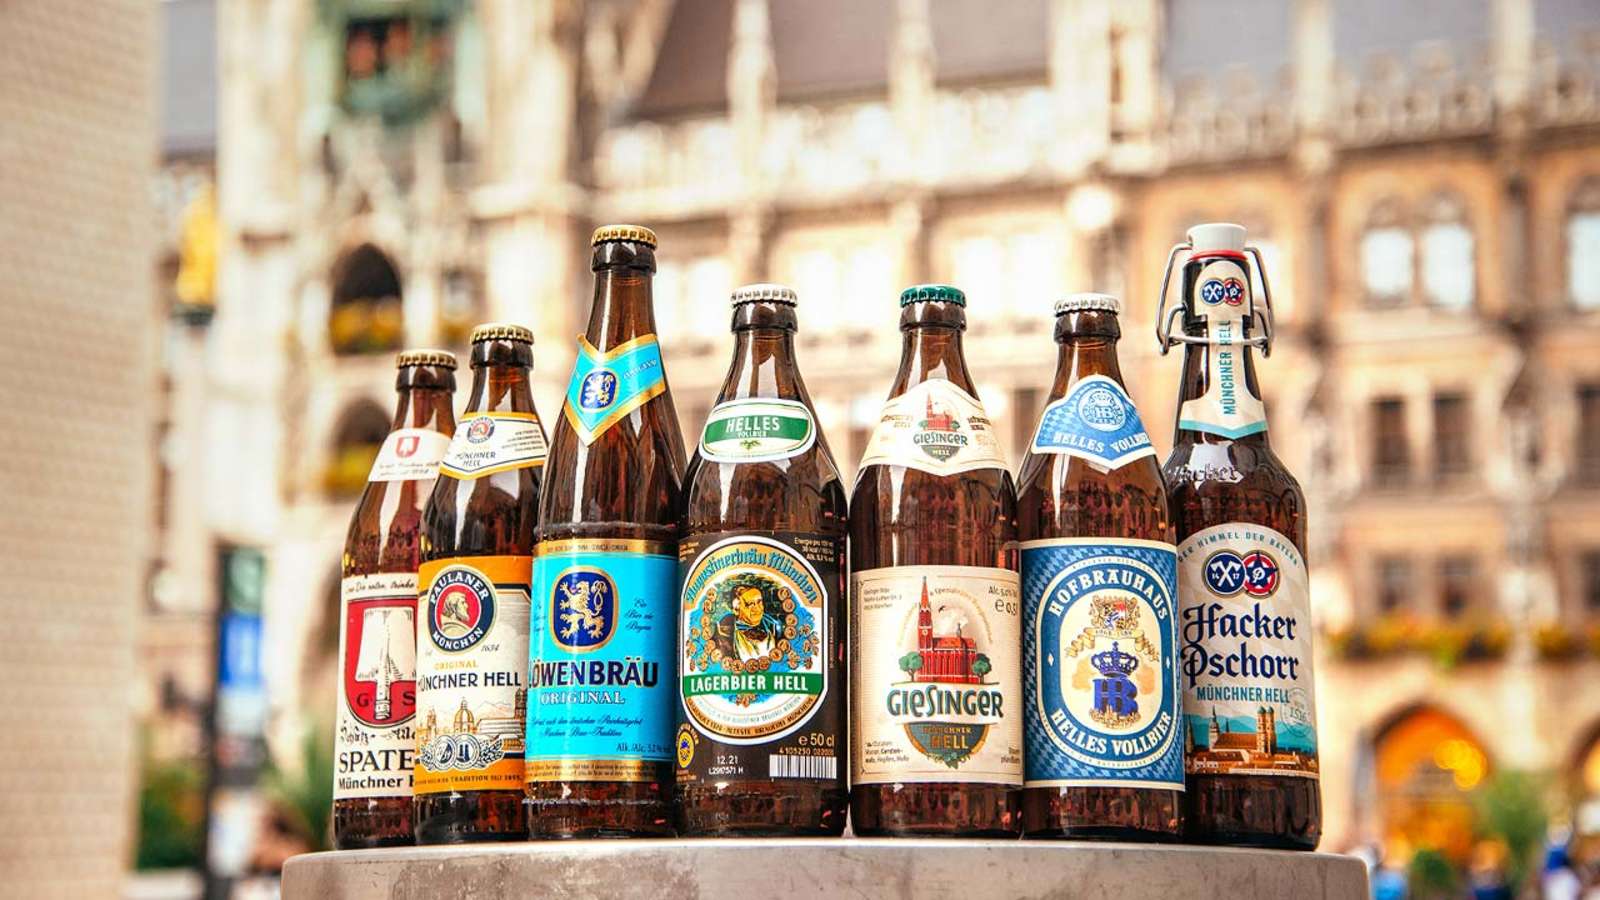 Giesinger Bräu ist 15 Jahre nach Gründung nun eine von nur sieben Brauereien, die ein Münchner Hell herstellen dürfen...